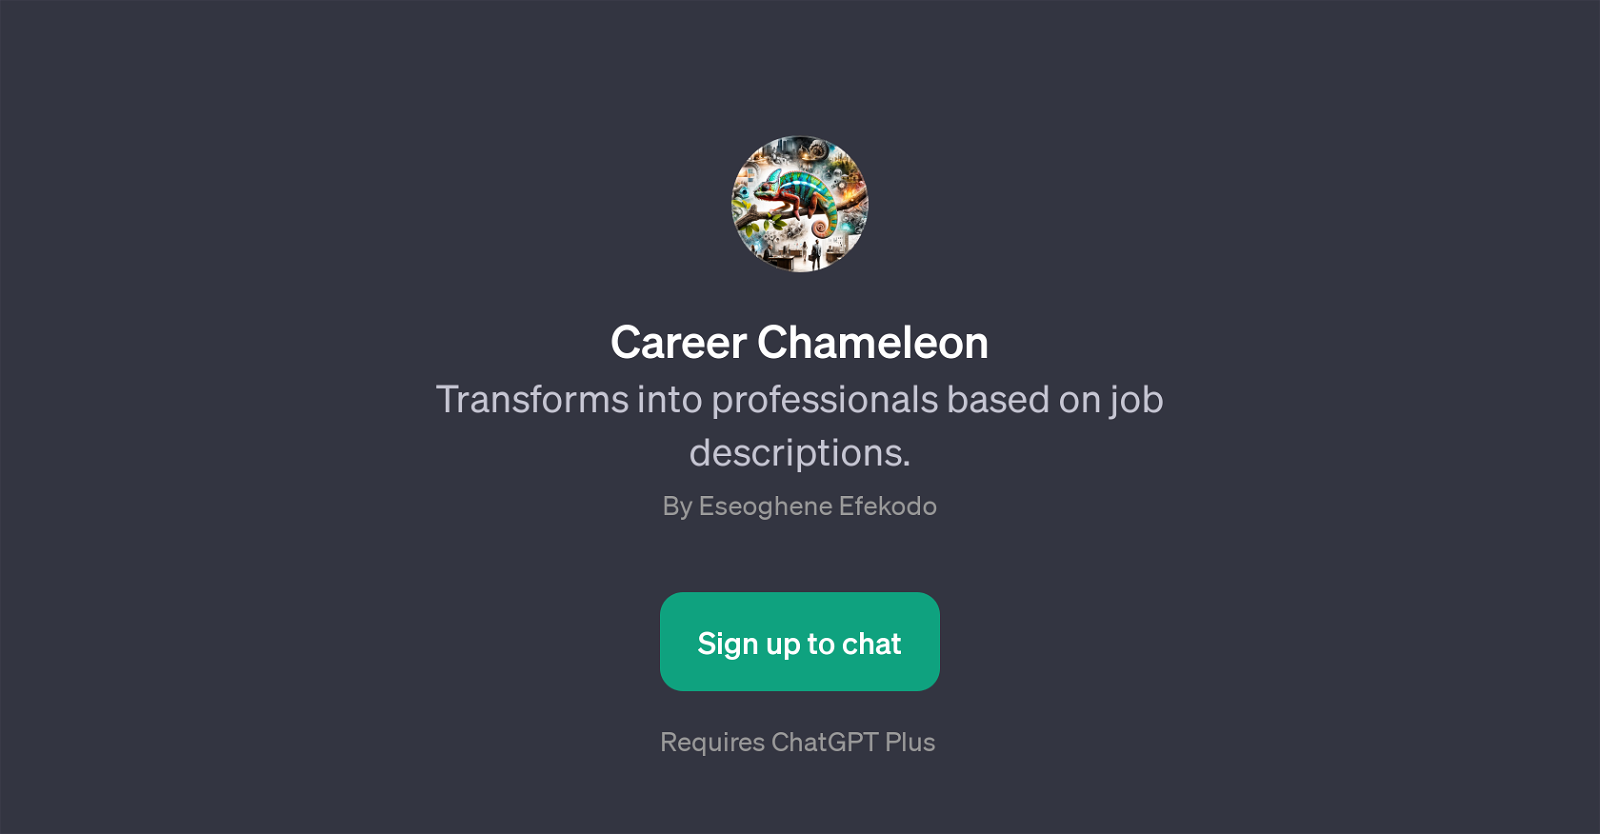 Career Chameleon website